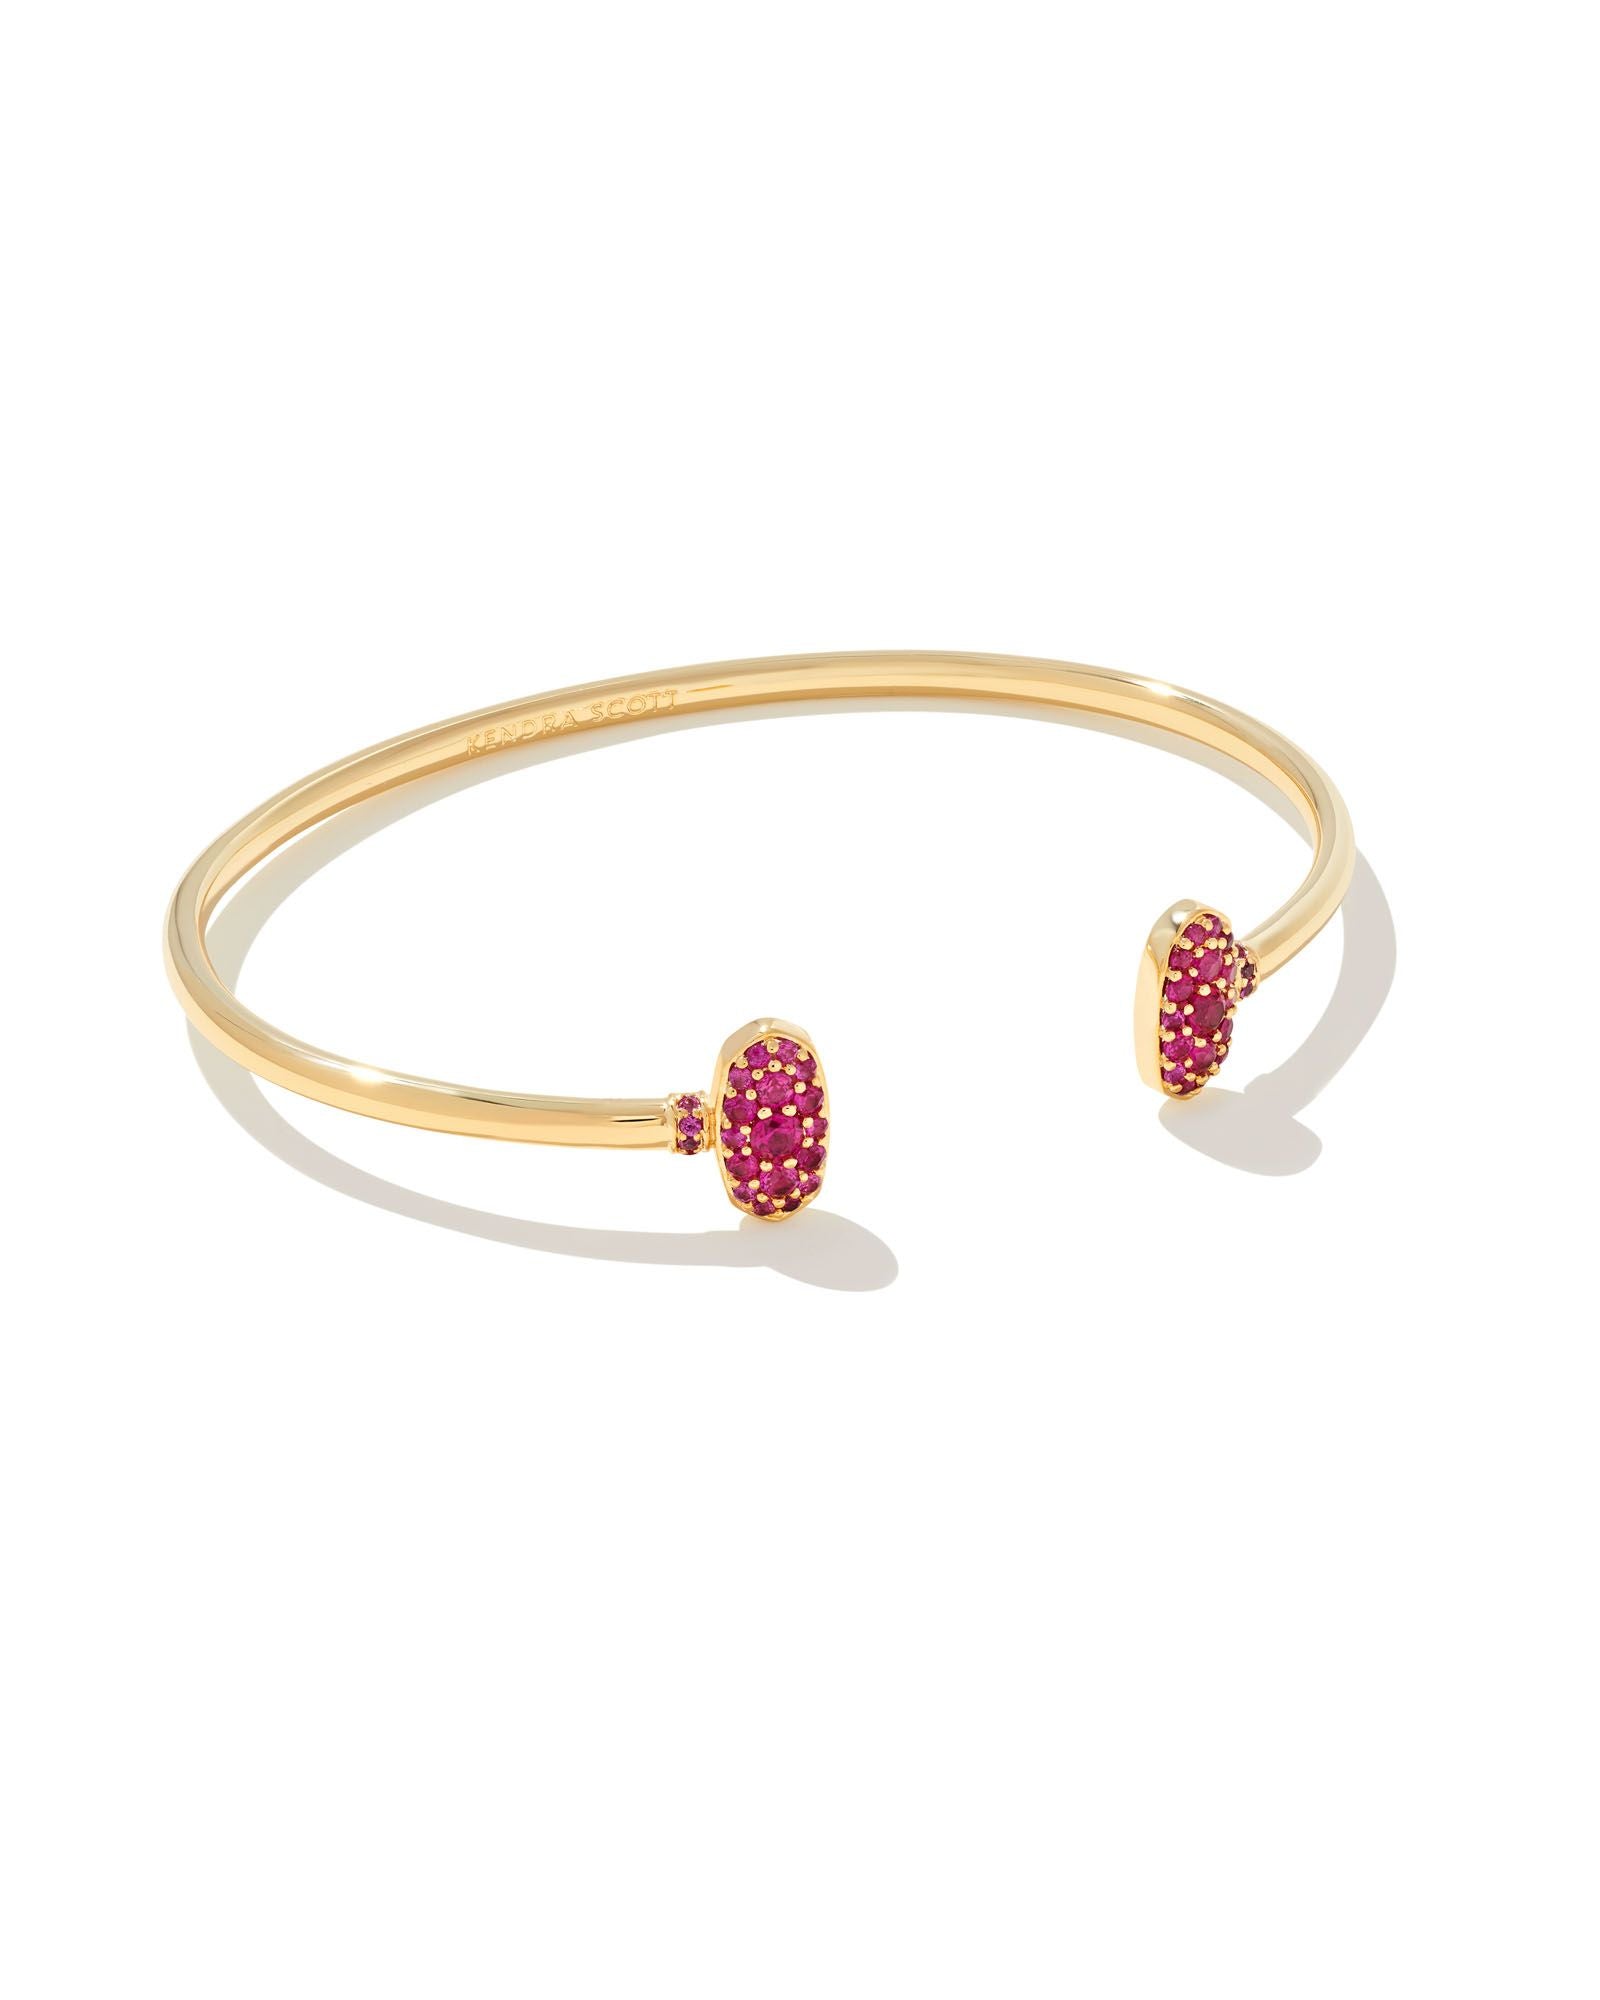 Kendra Scott gold cuff bracelet in ruby crystal